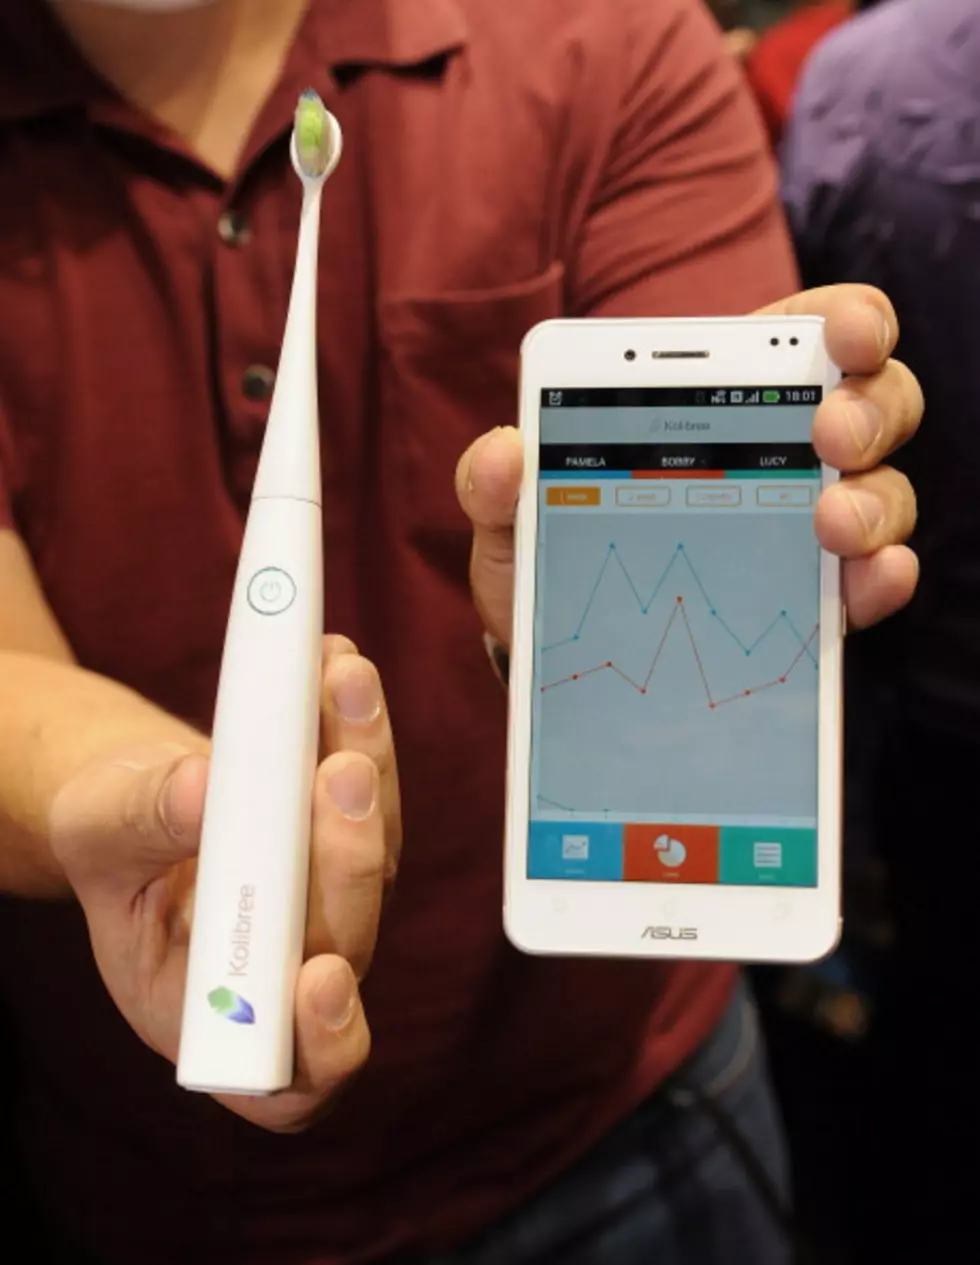 Toothbrush Meets Phone App